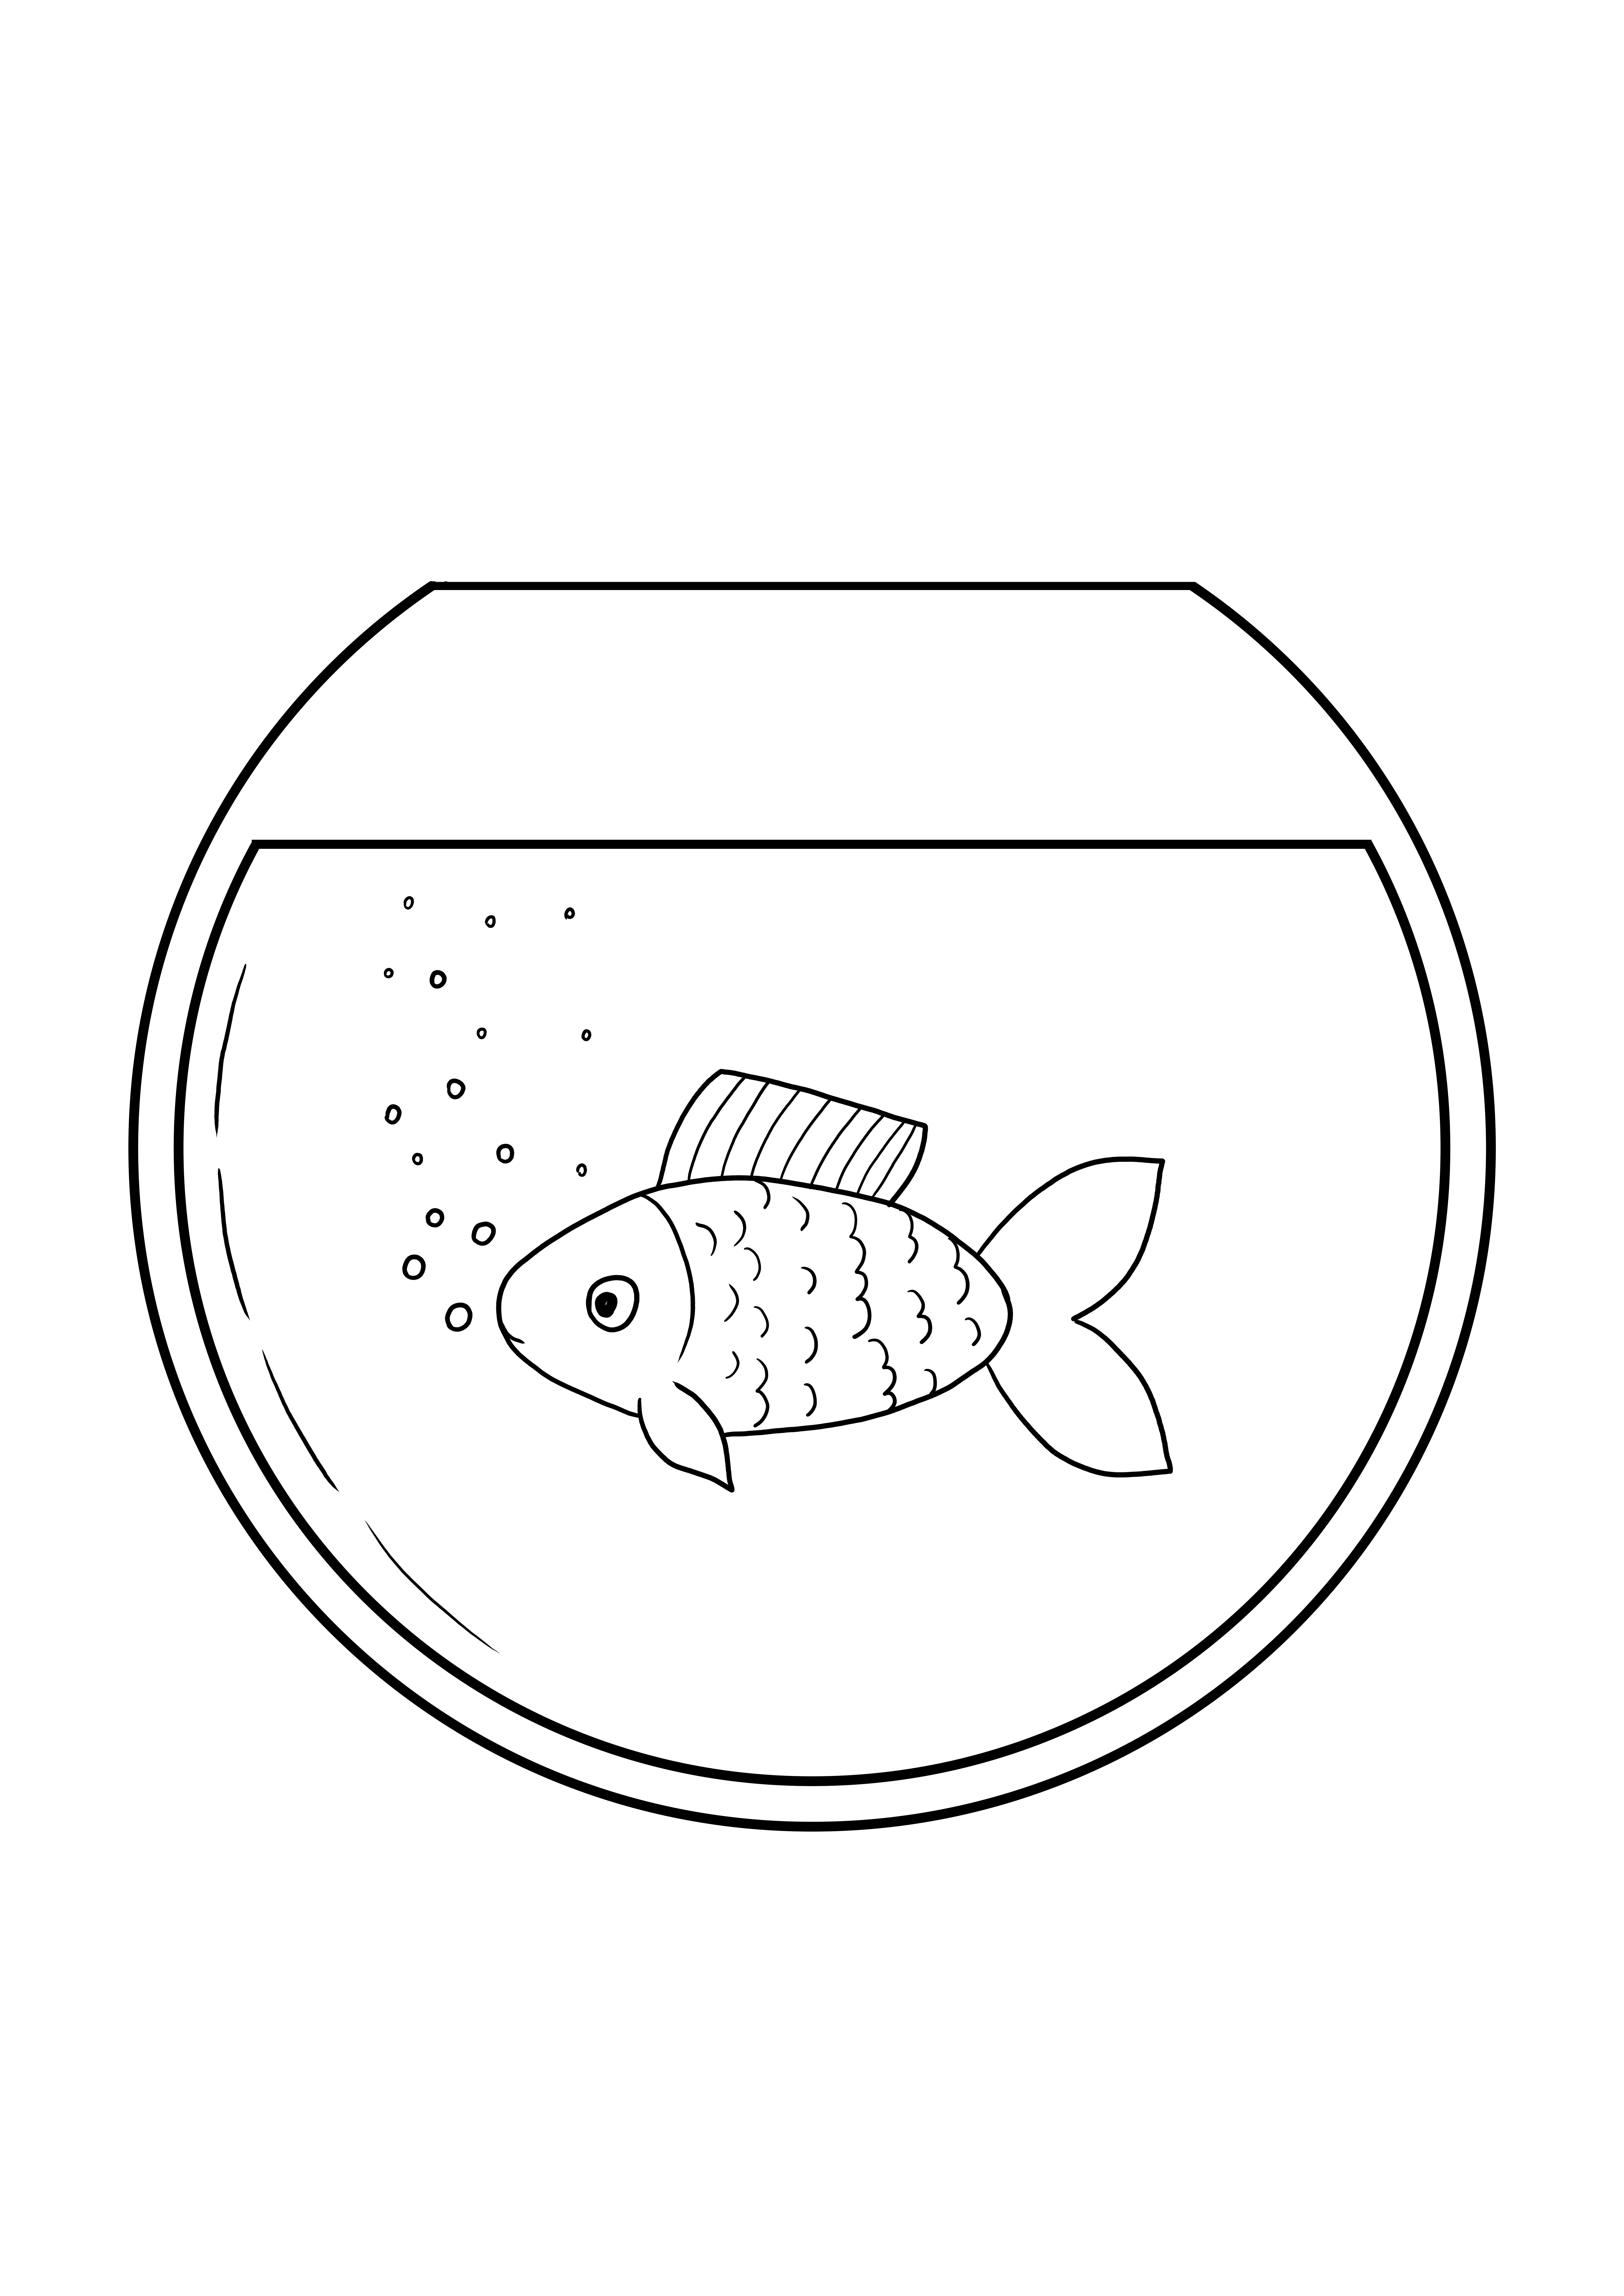 Balık kasesi akvaryumu ücretsiz indirme ve boyama sayfası